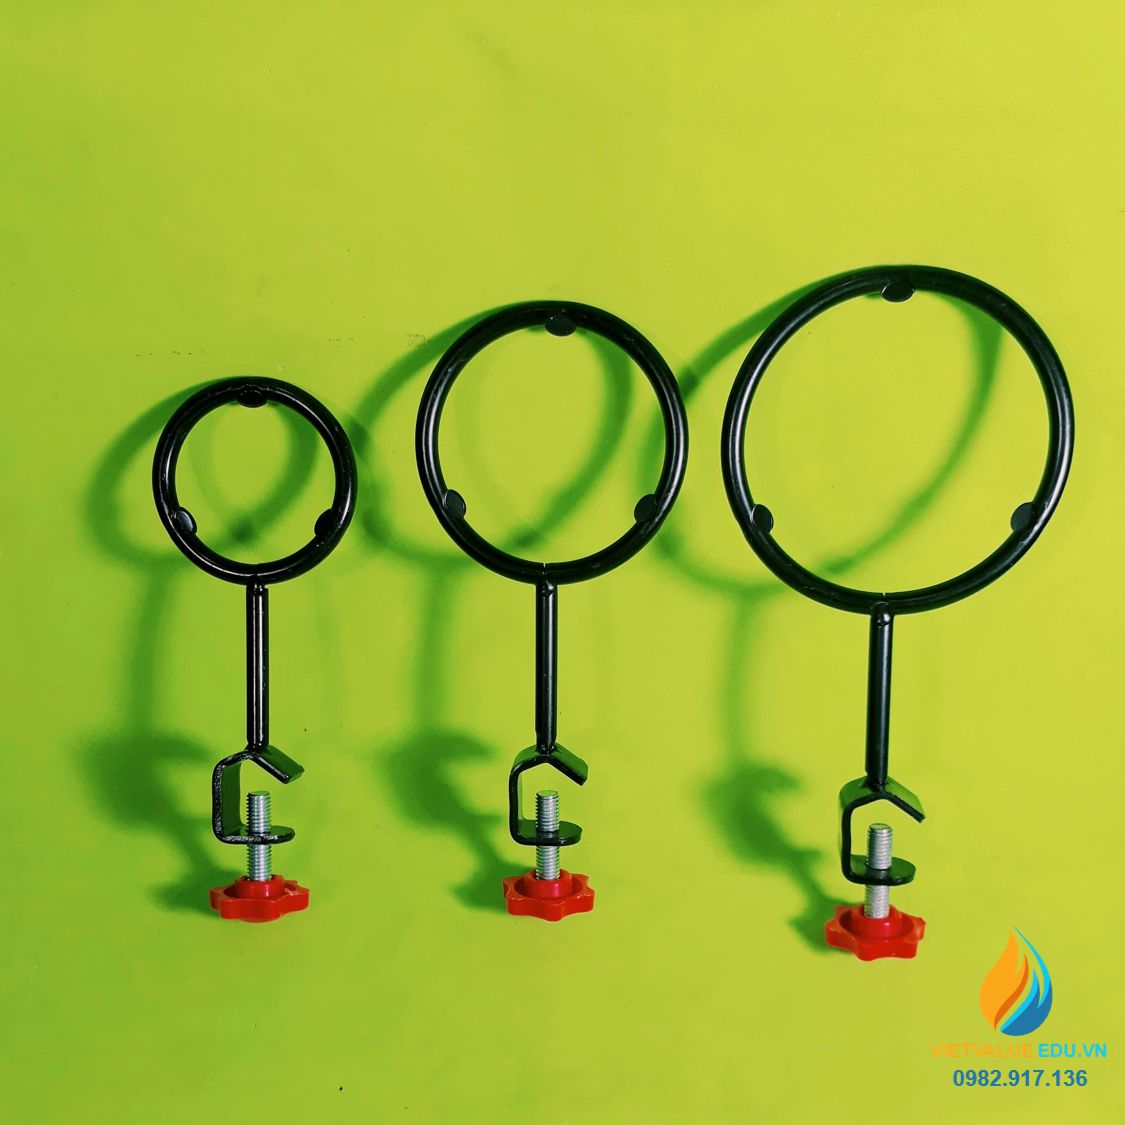 Bộ 3 vòng đỡ gắn với giá thí nghiệm, đường kính vòng từ 8cm đến 10cm